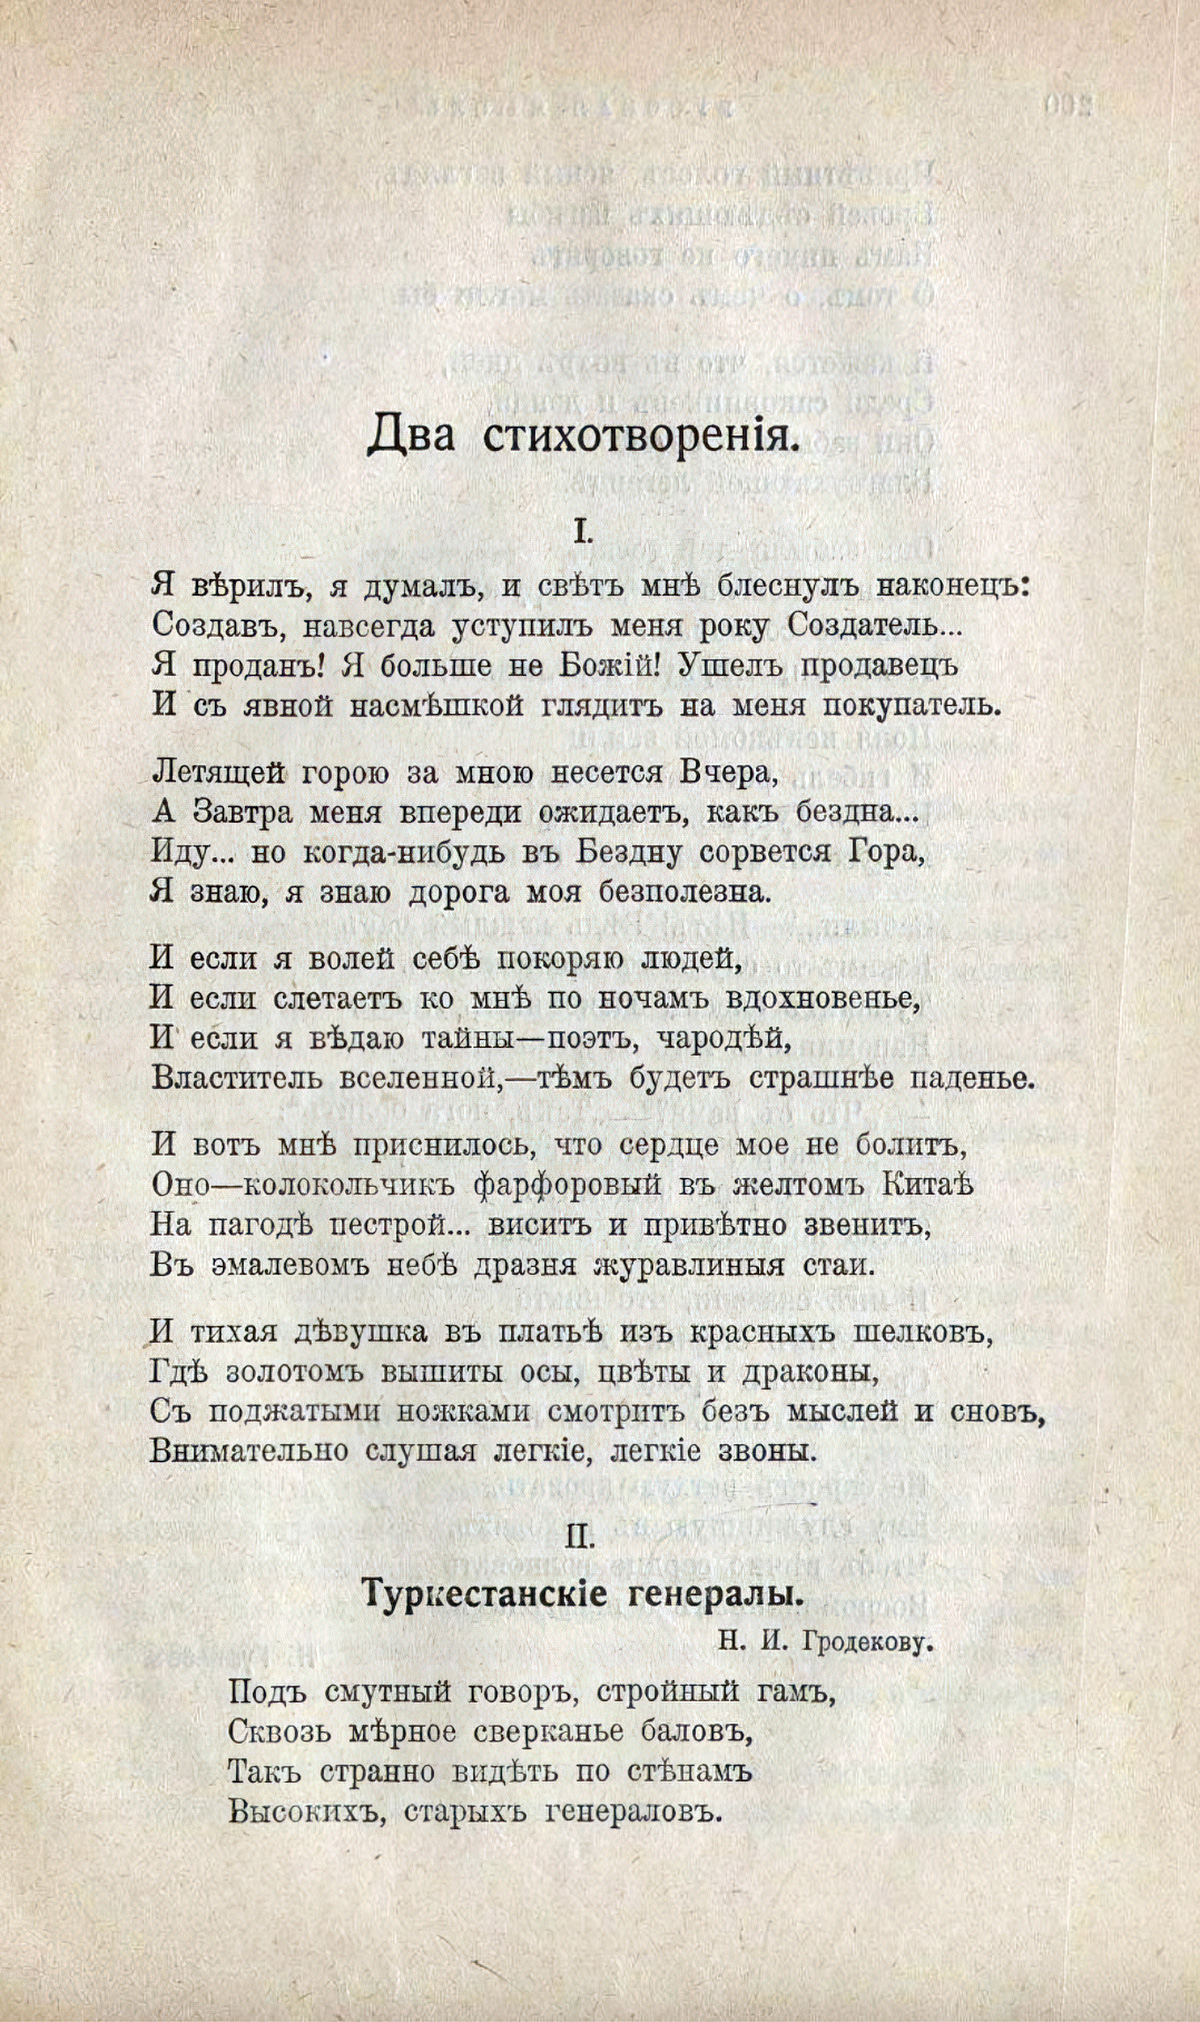 Русская мысль» № 1, 1912. Страница 199